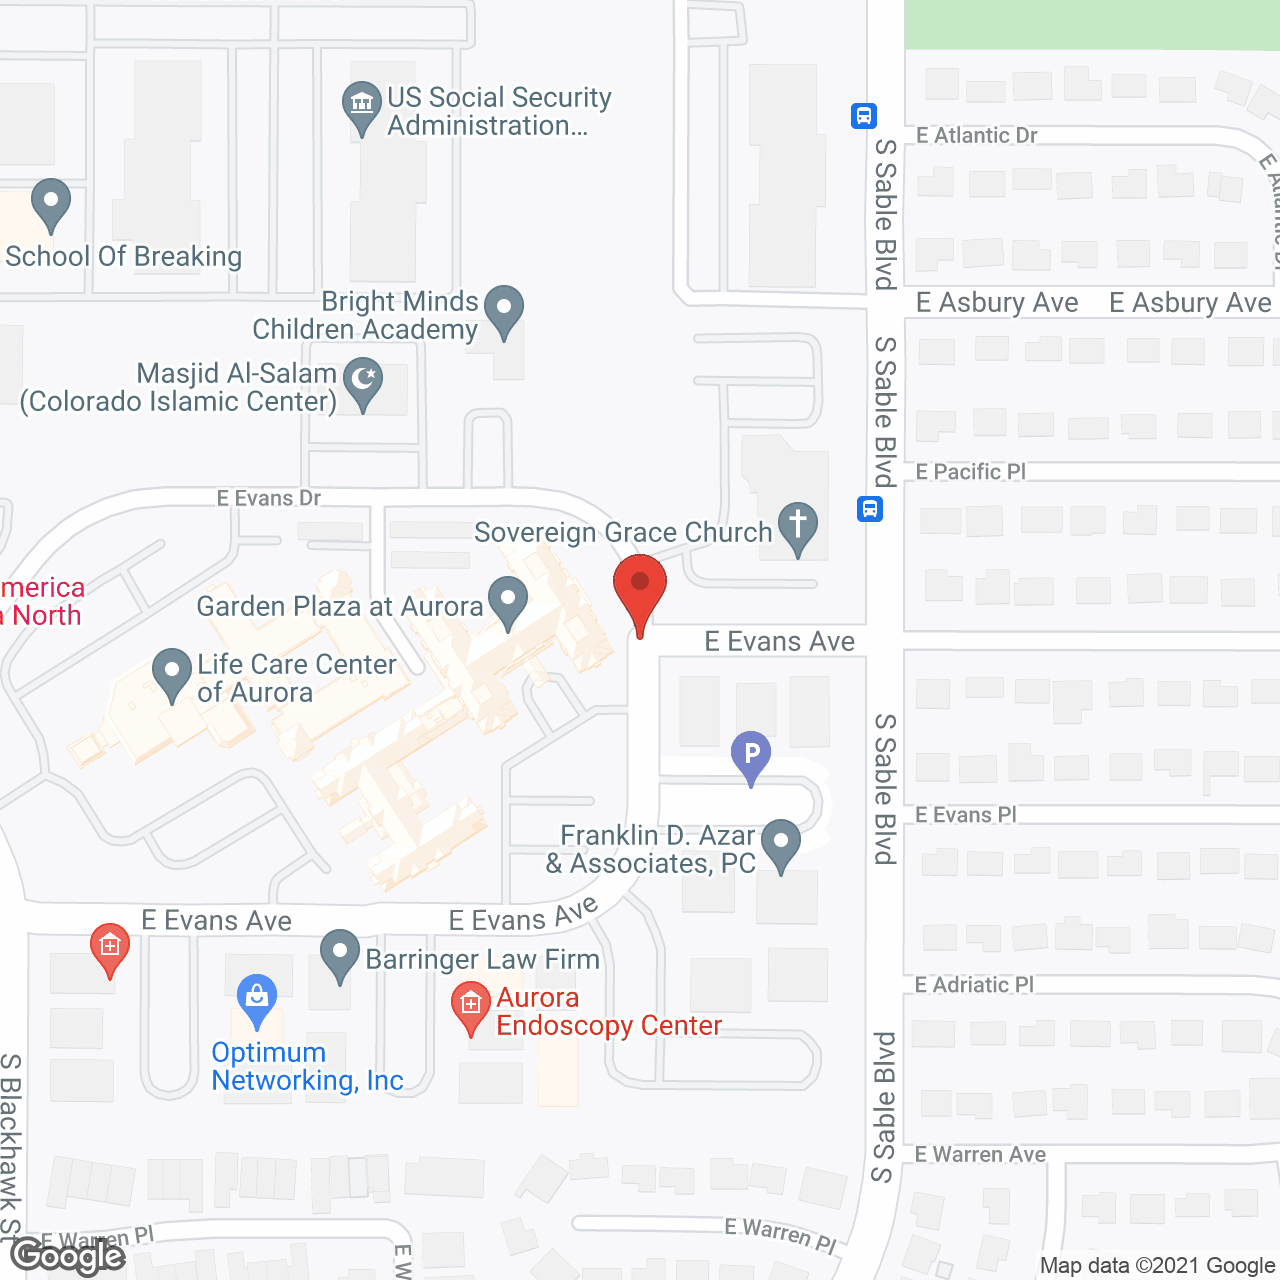 Garden Plaza of Aurora in google map